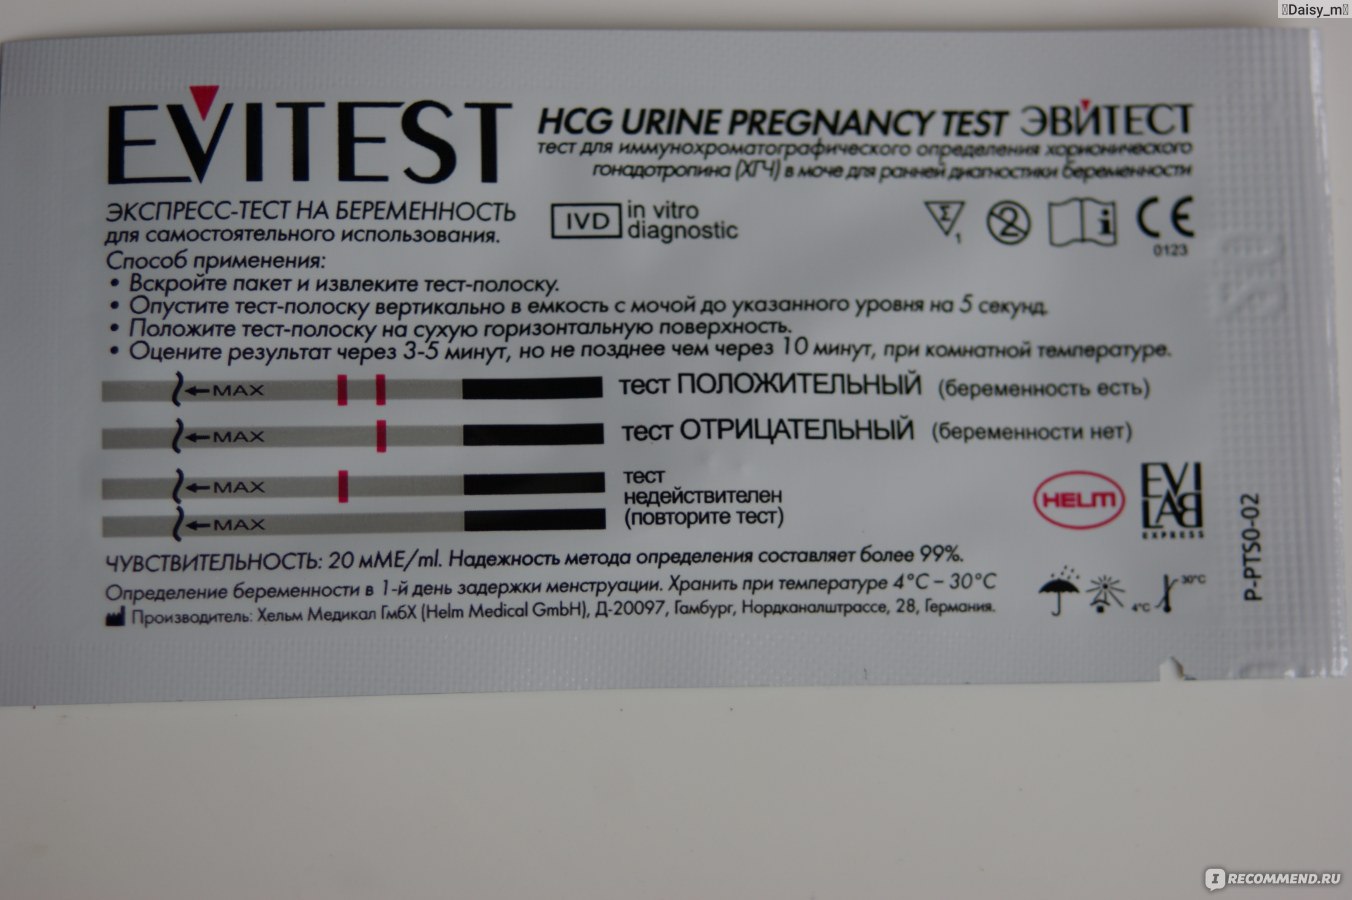 10 мл чувствительность теста на беременность. Чувствительность тестов на беременность 20 ММЕ/мл. Эвитест 10 ММЕ/мл. Тест на беременность эвитест чувствительность. Тест чувствительность 10 ММЕ/мл тест на беременность.